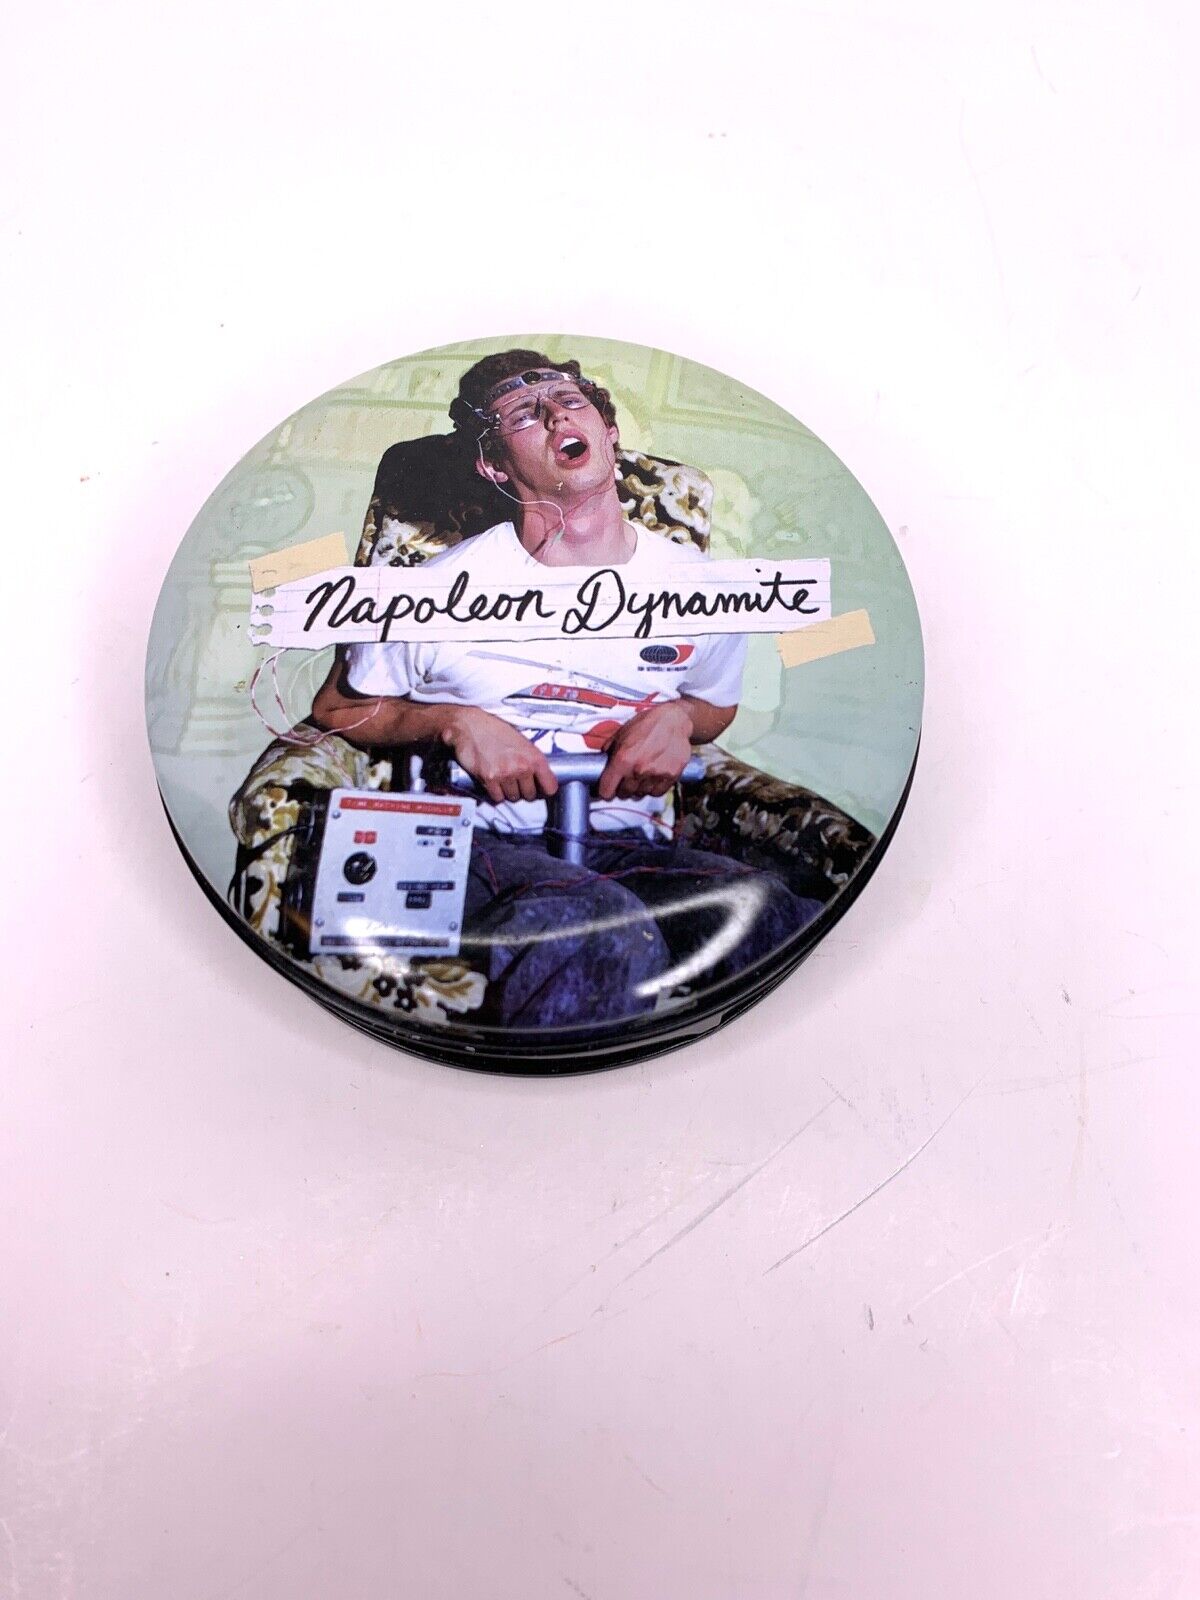 NAPOLEON DYNAMITE Tin with Coaster Set - Missing 1